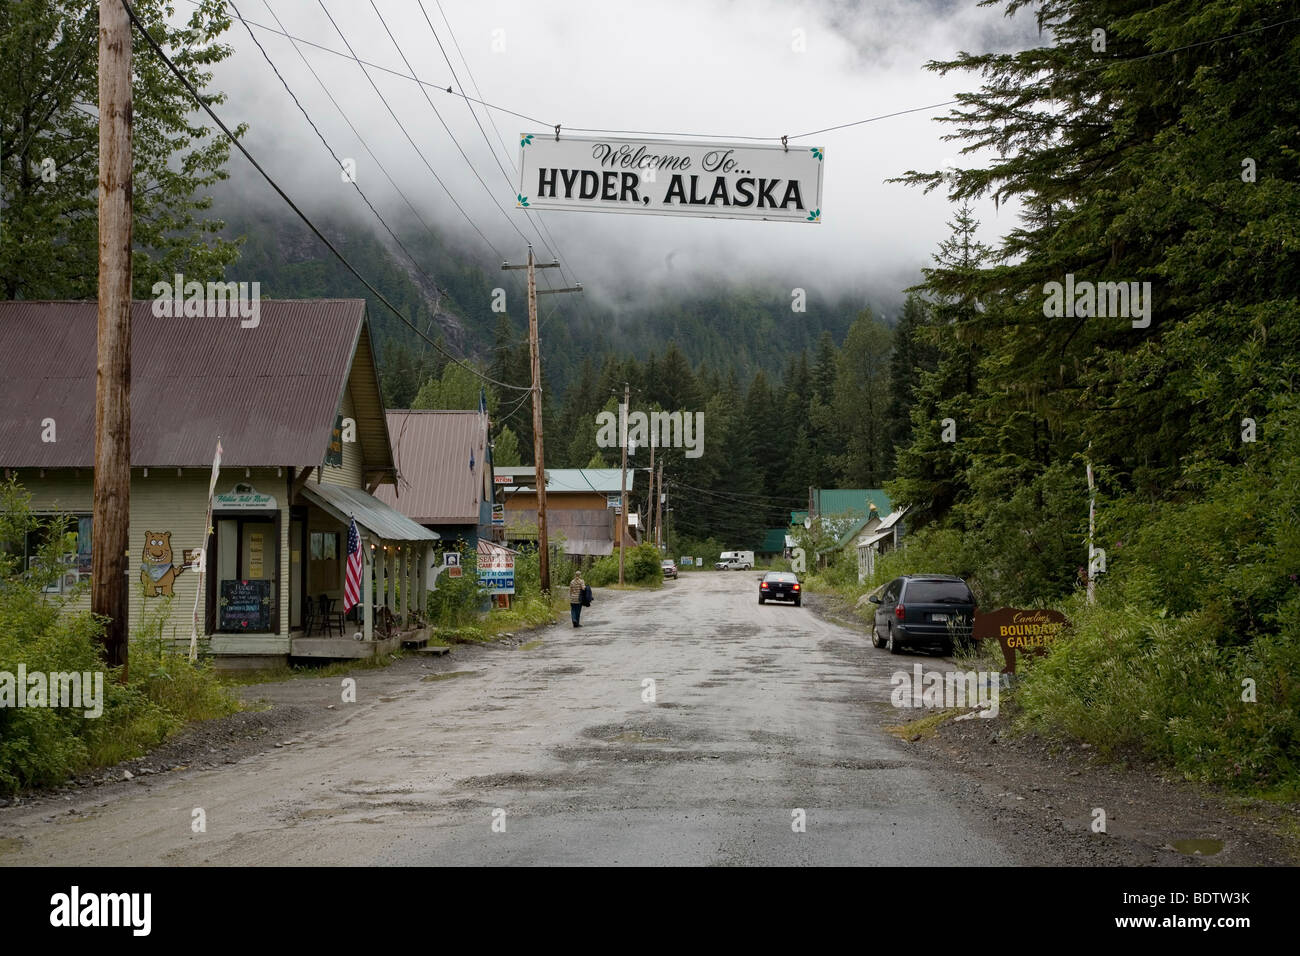 Das Ende der Zivilisation / The end of civilisation / Hyder - Alaska Stock Photo